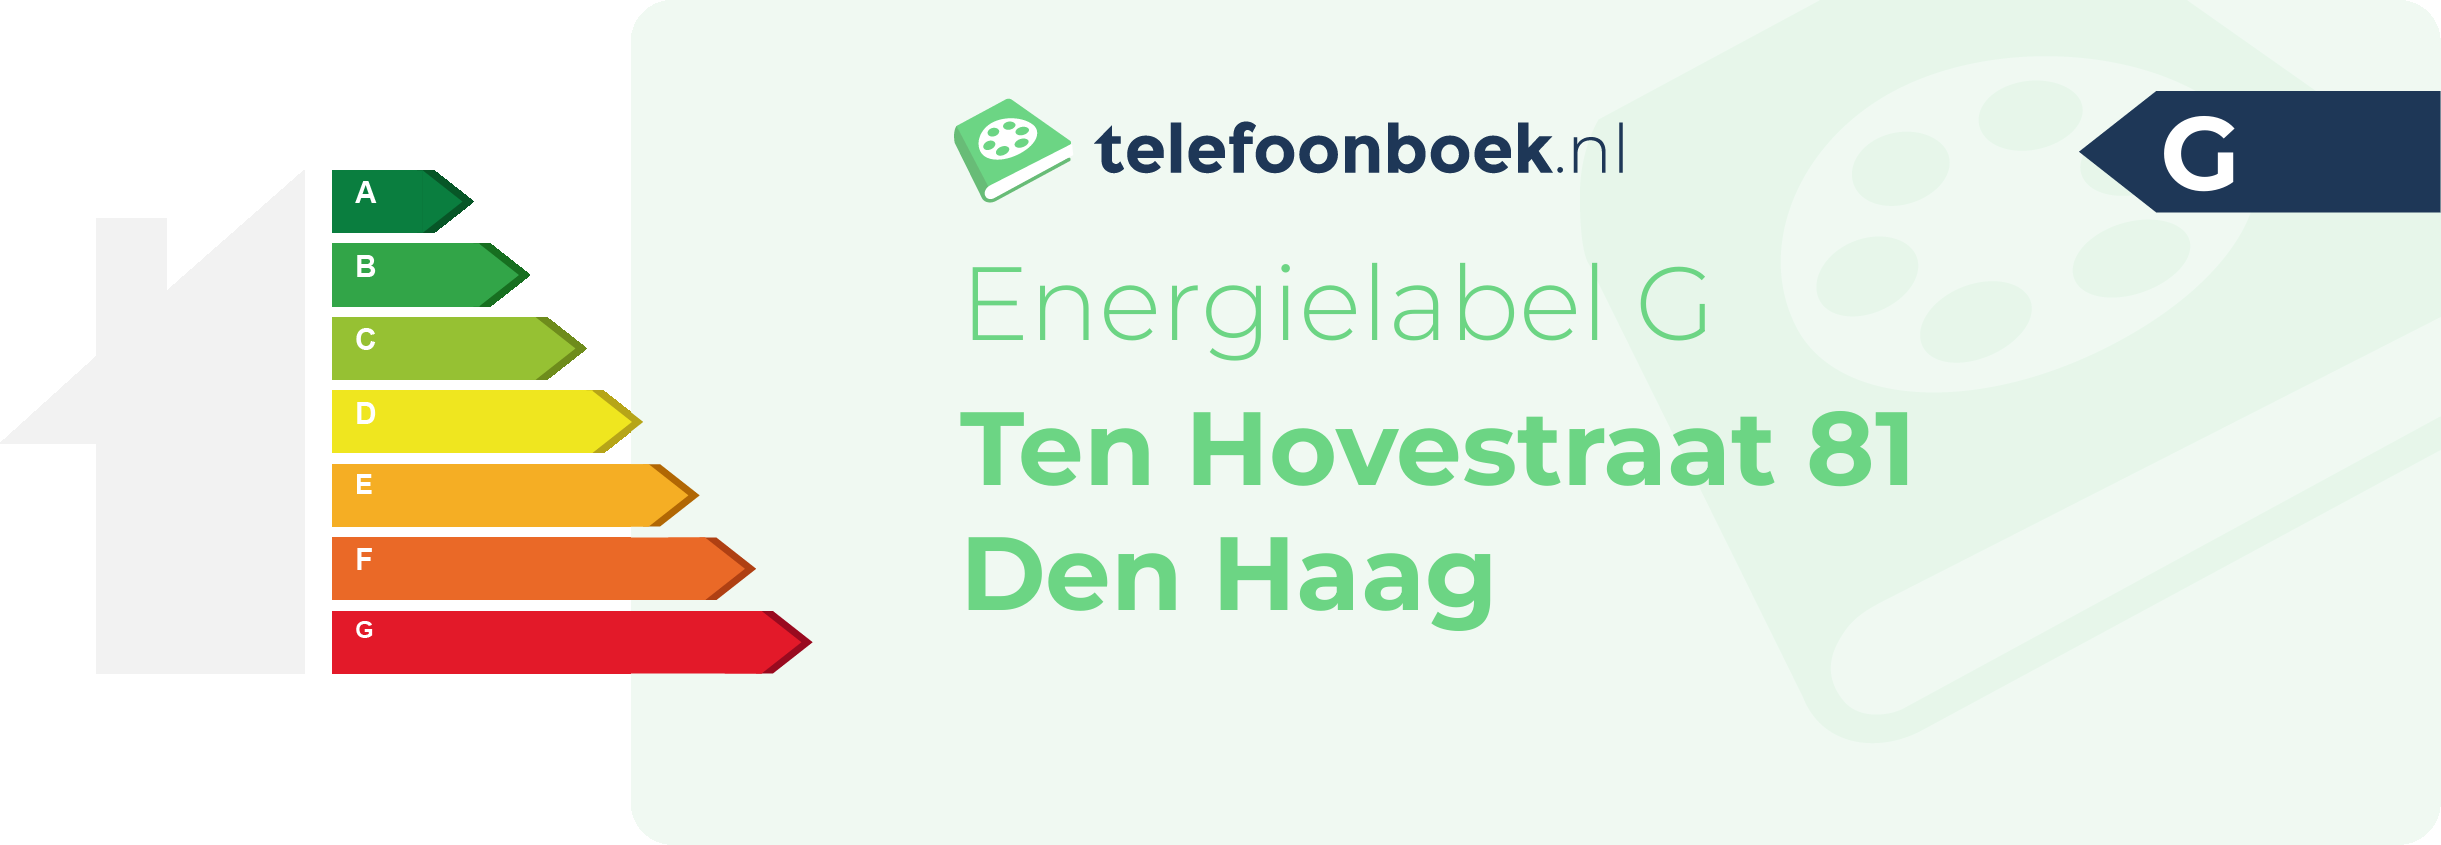 Energielabel Ten Hovestraat 81 Den Haag